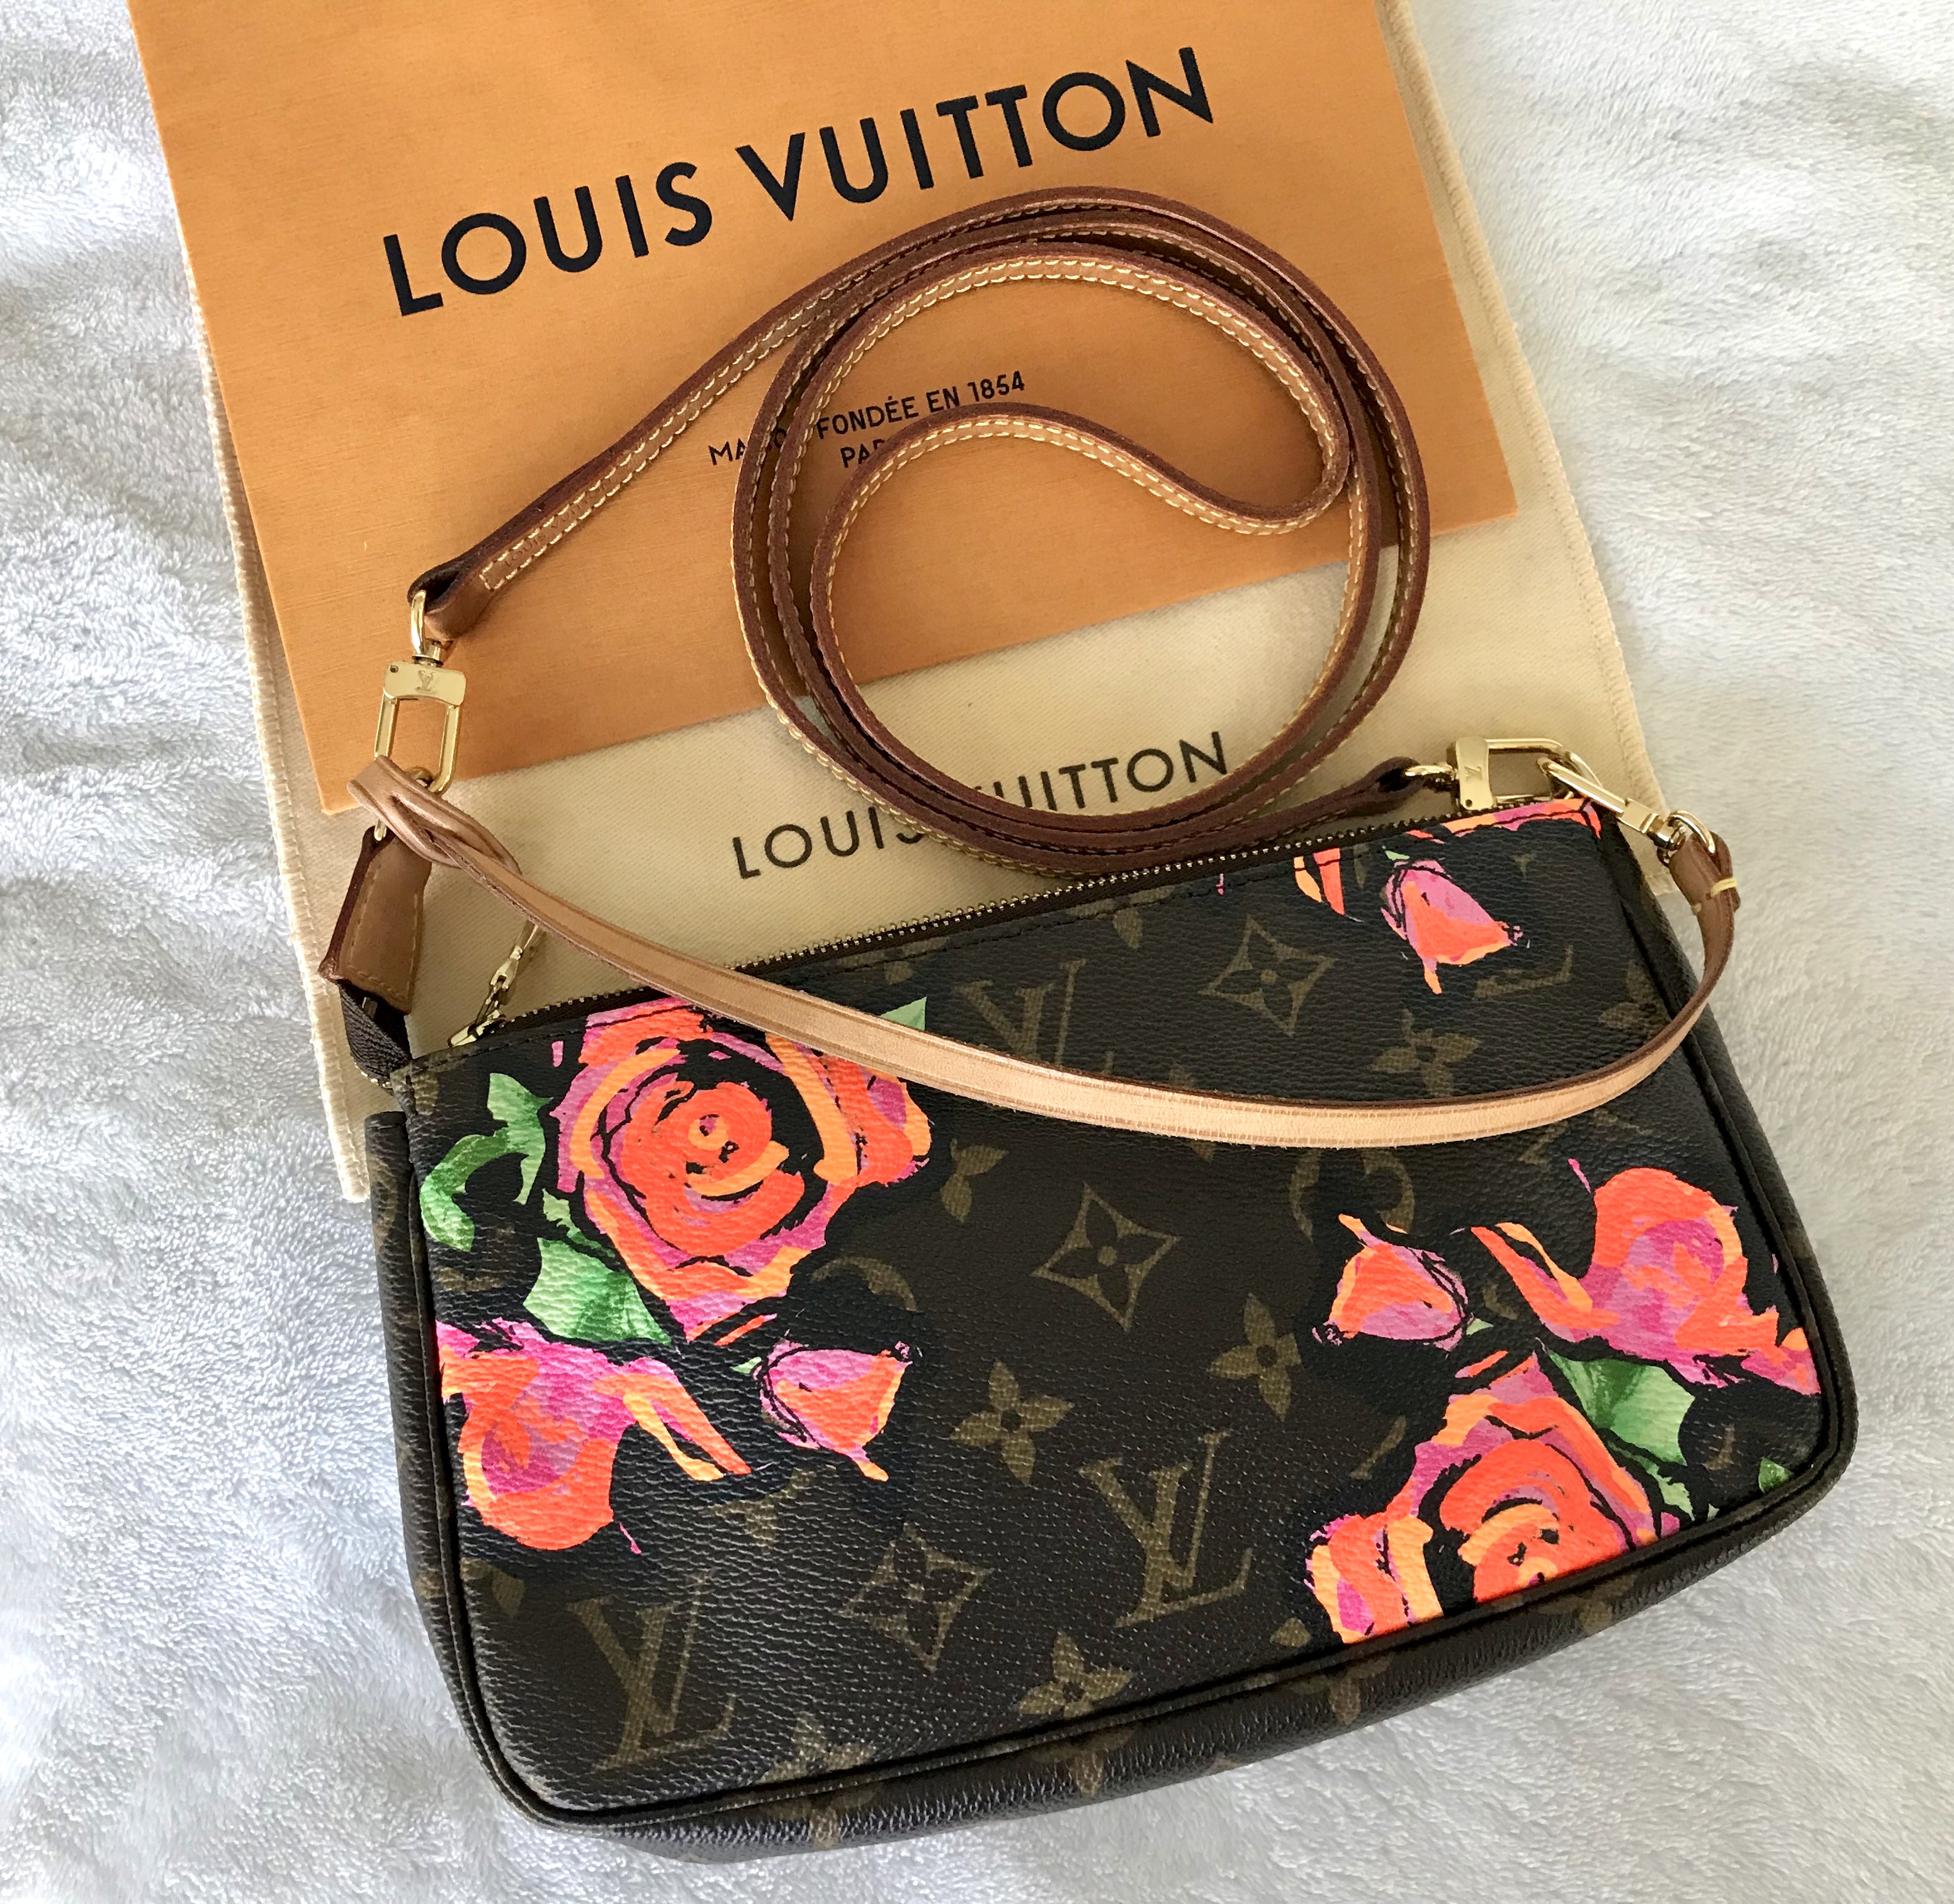 UNBOXING: Louis Vuitton Pochette Accessoire Stephen Sprouse